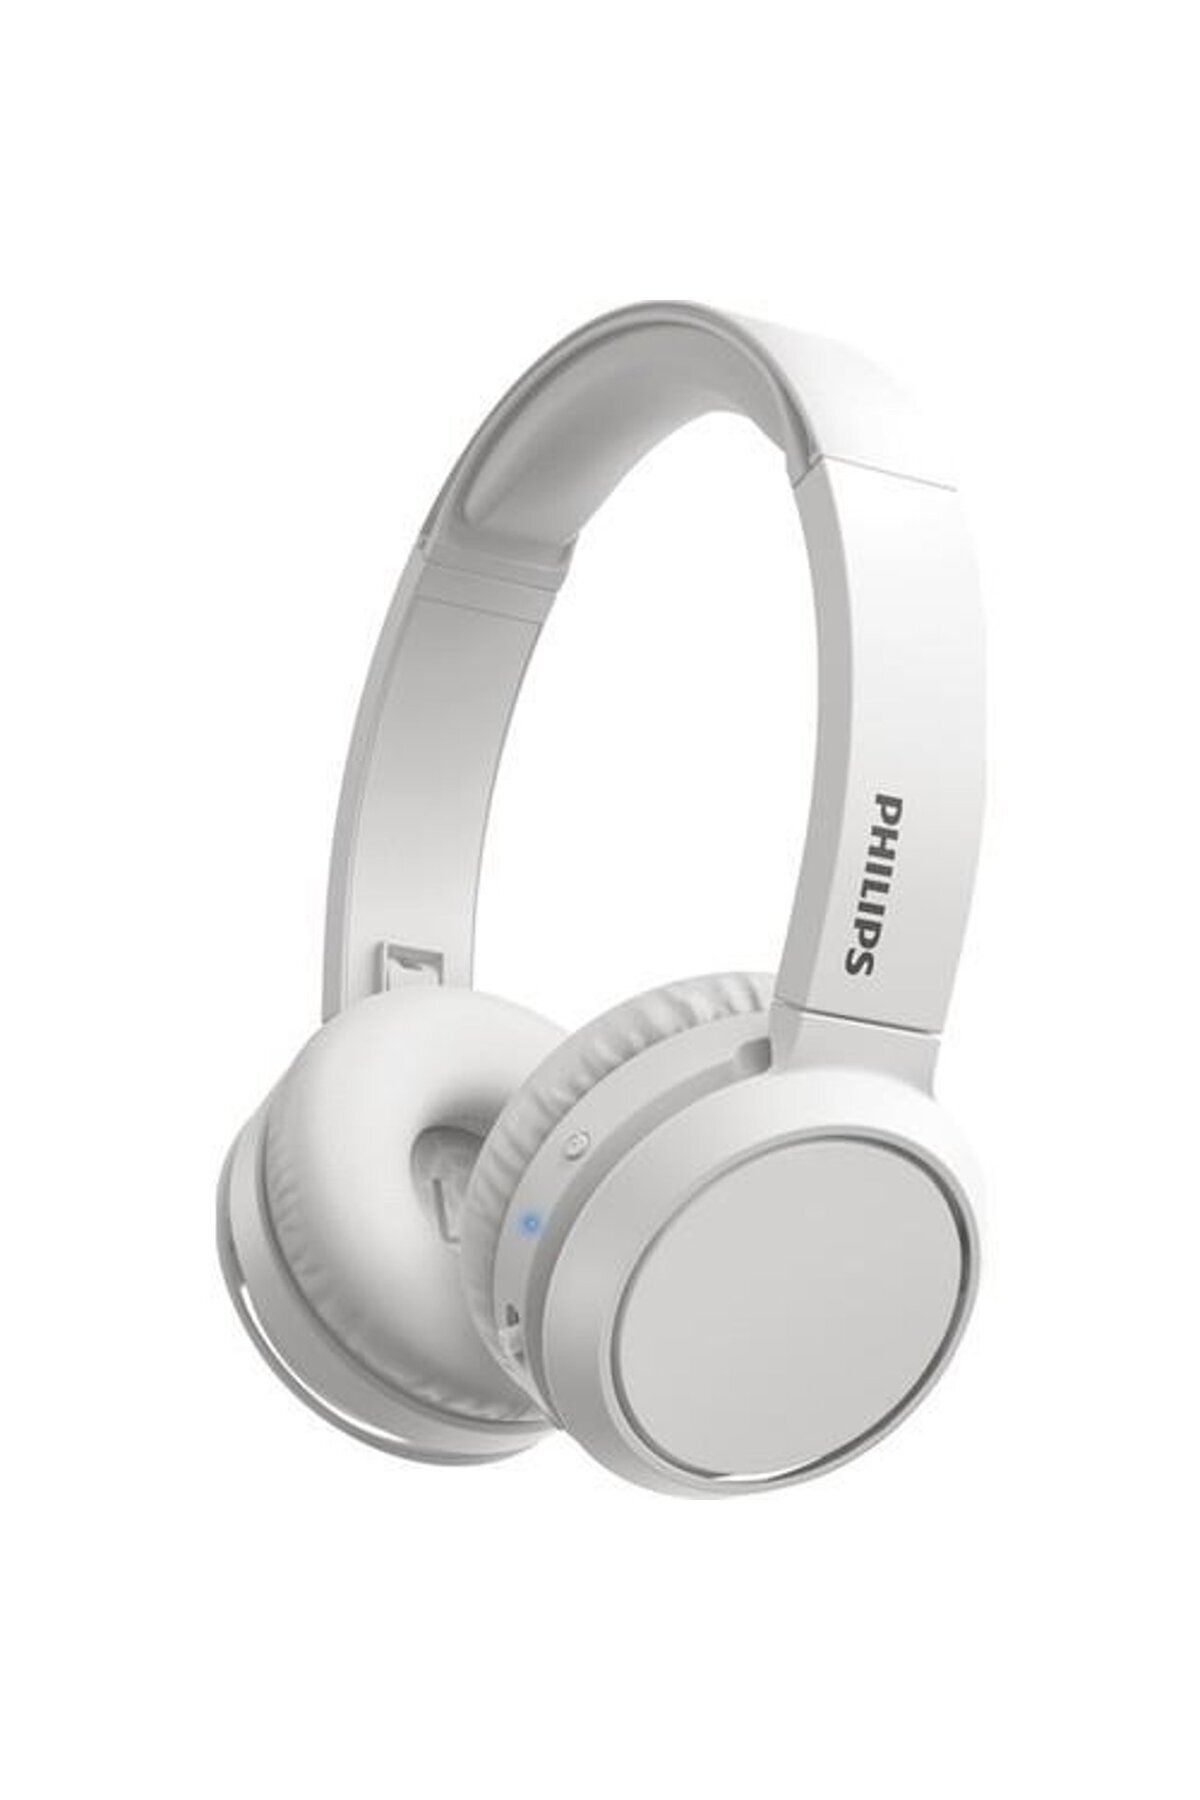 Philips Tah4205rd Kablosuz Kulak Üstü Kulaklık (mikrofonlu) Beyaz - 29 Saat